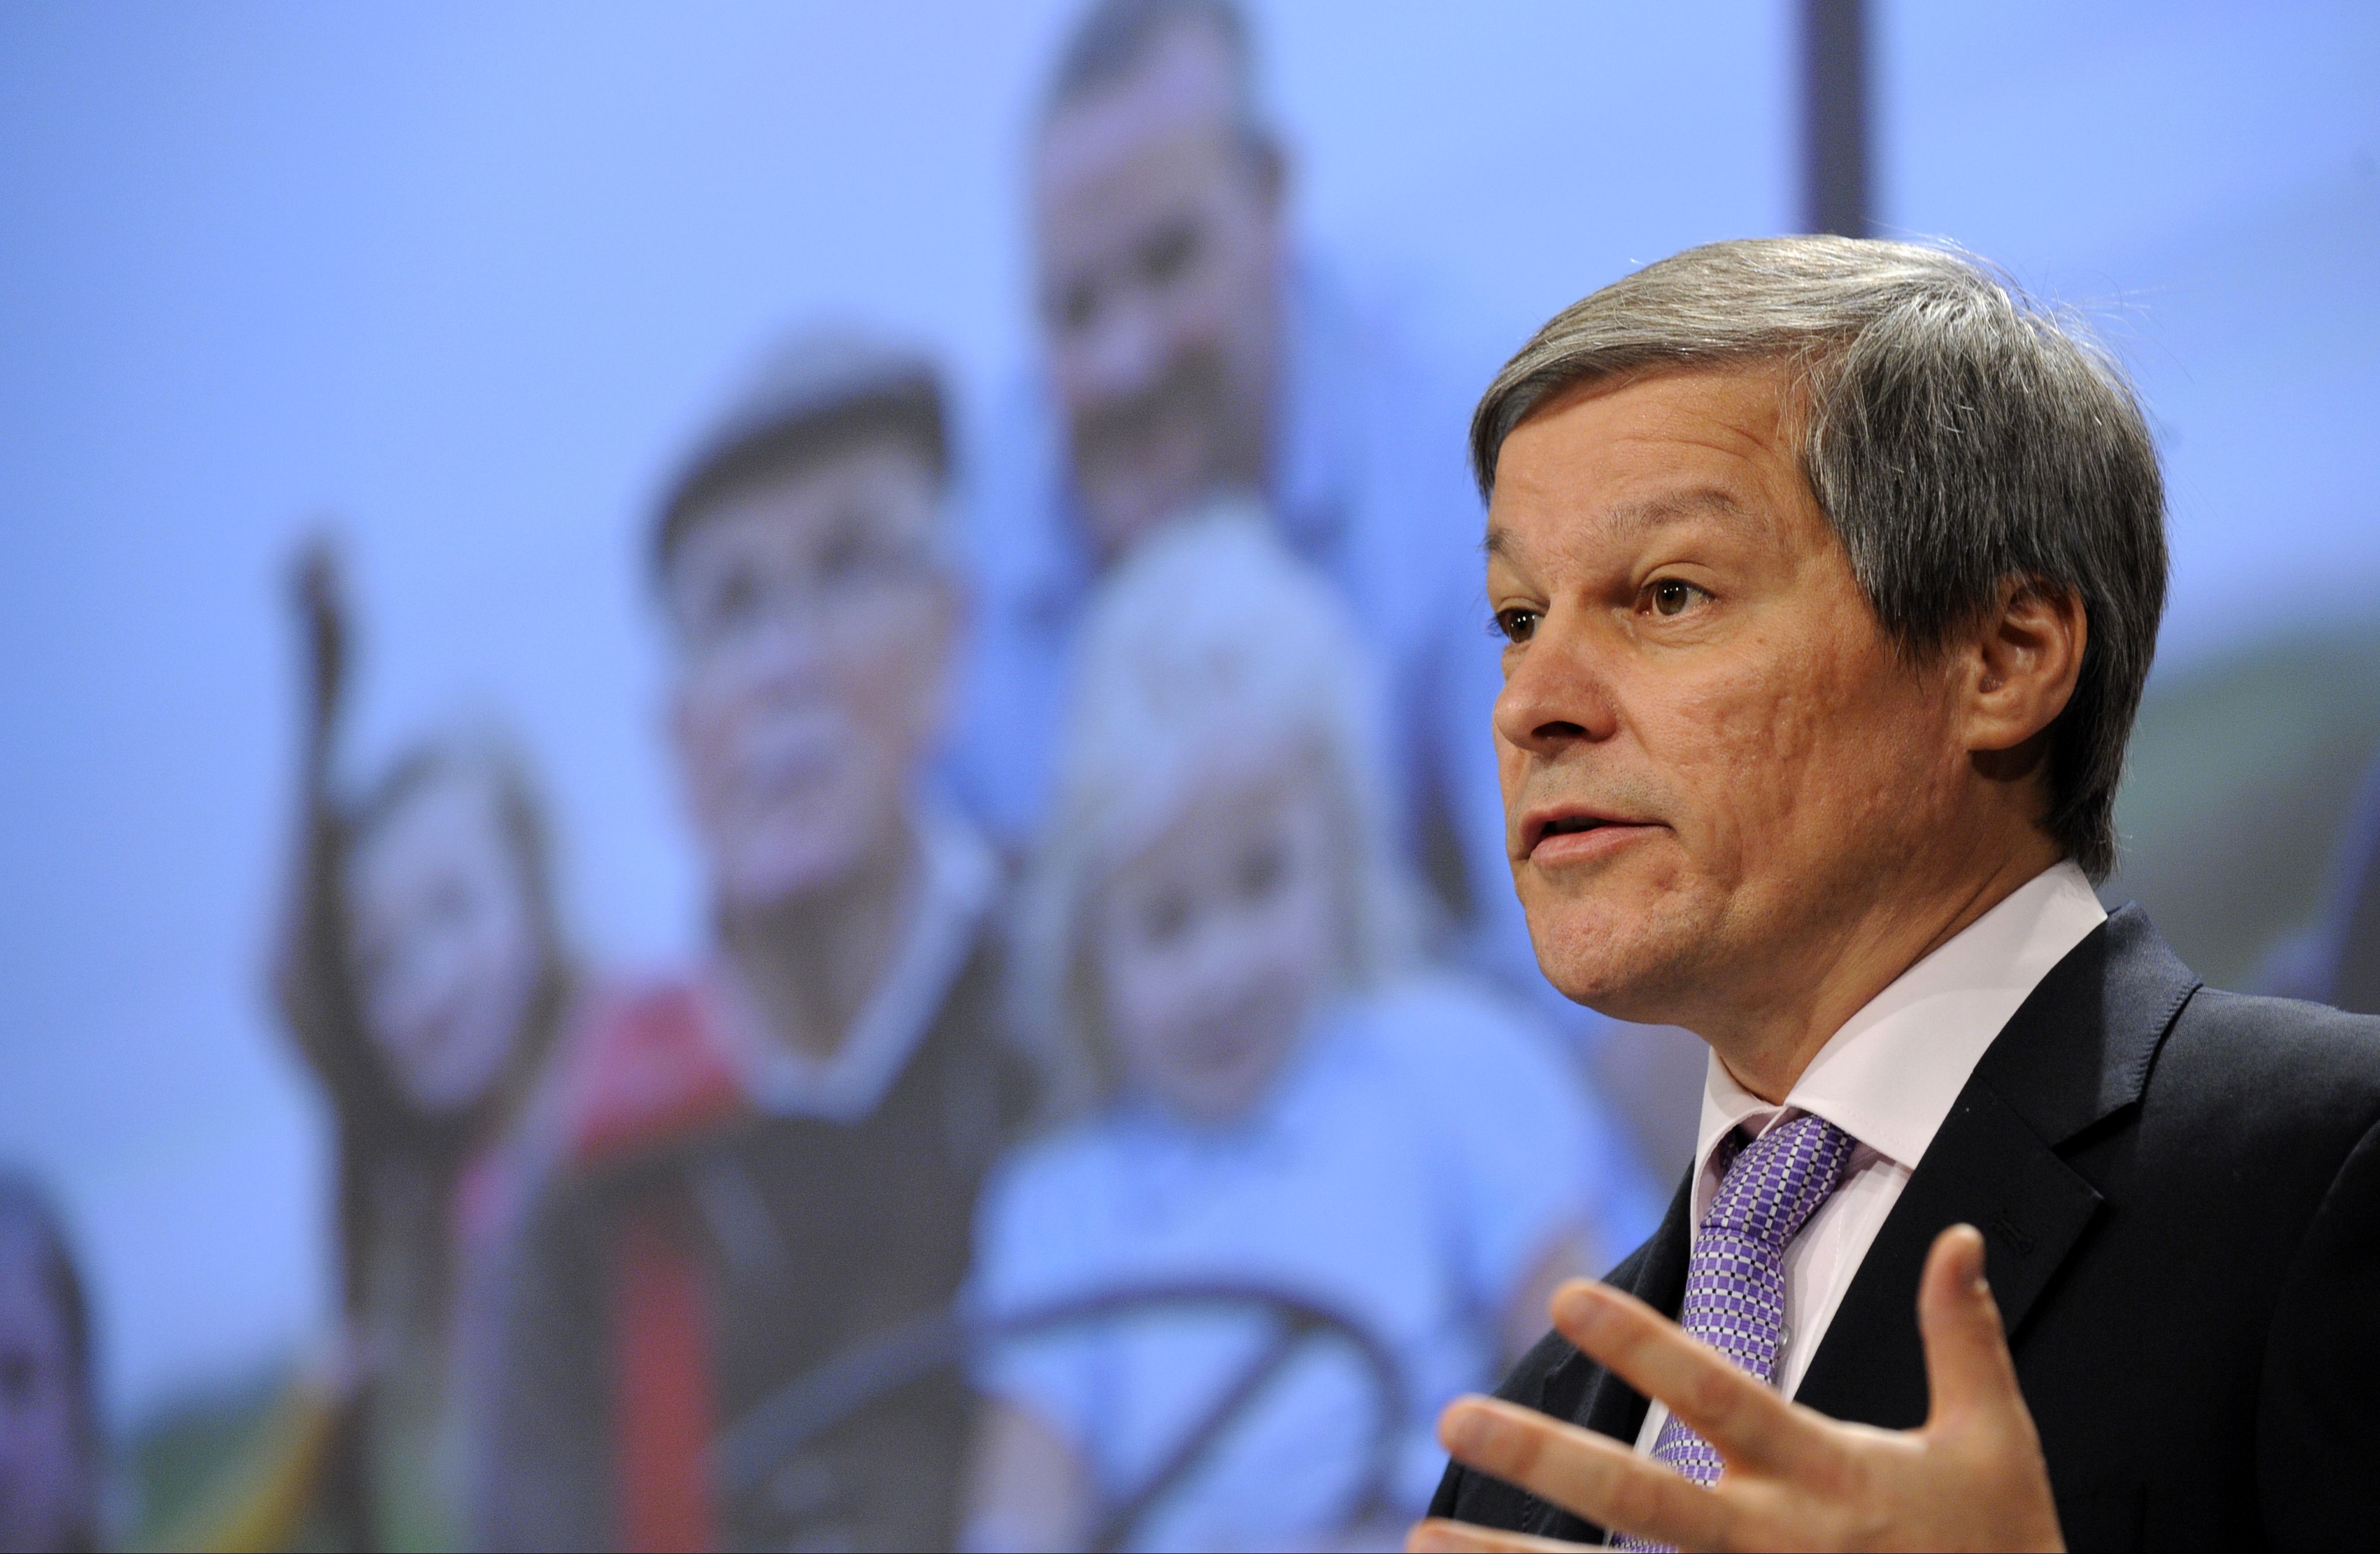 Cioloş: Creşterea economică nu înseamnă şi dezvoltare economică, dacă nu este valorificată